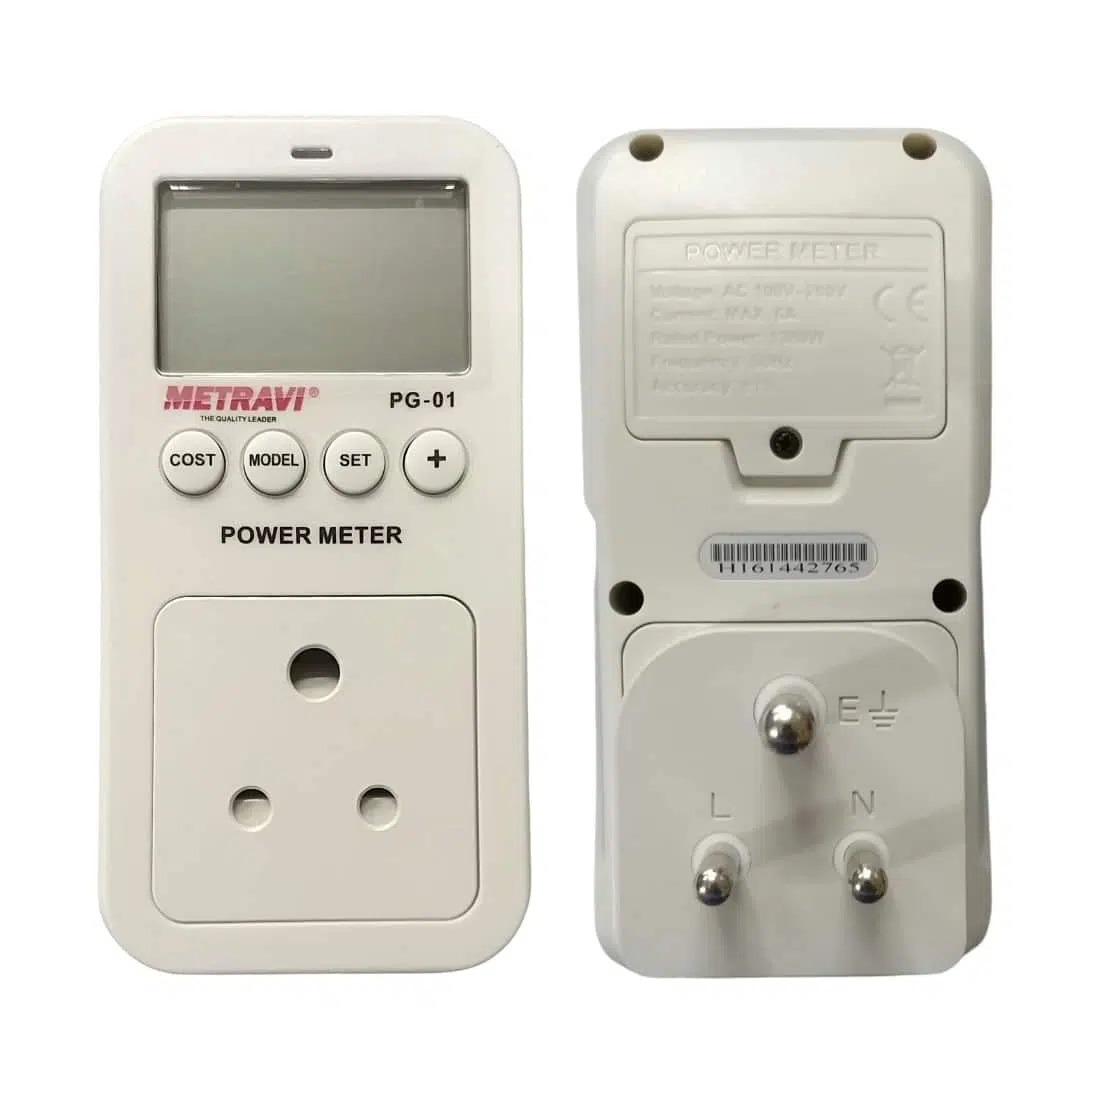 Metravi PG-01 Multifunction Power Guard with Energy Meter